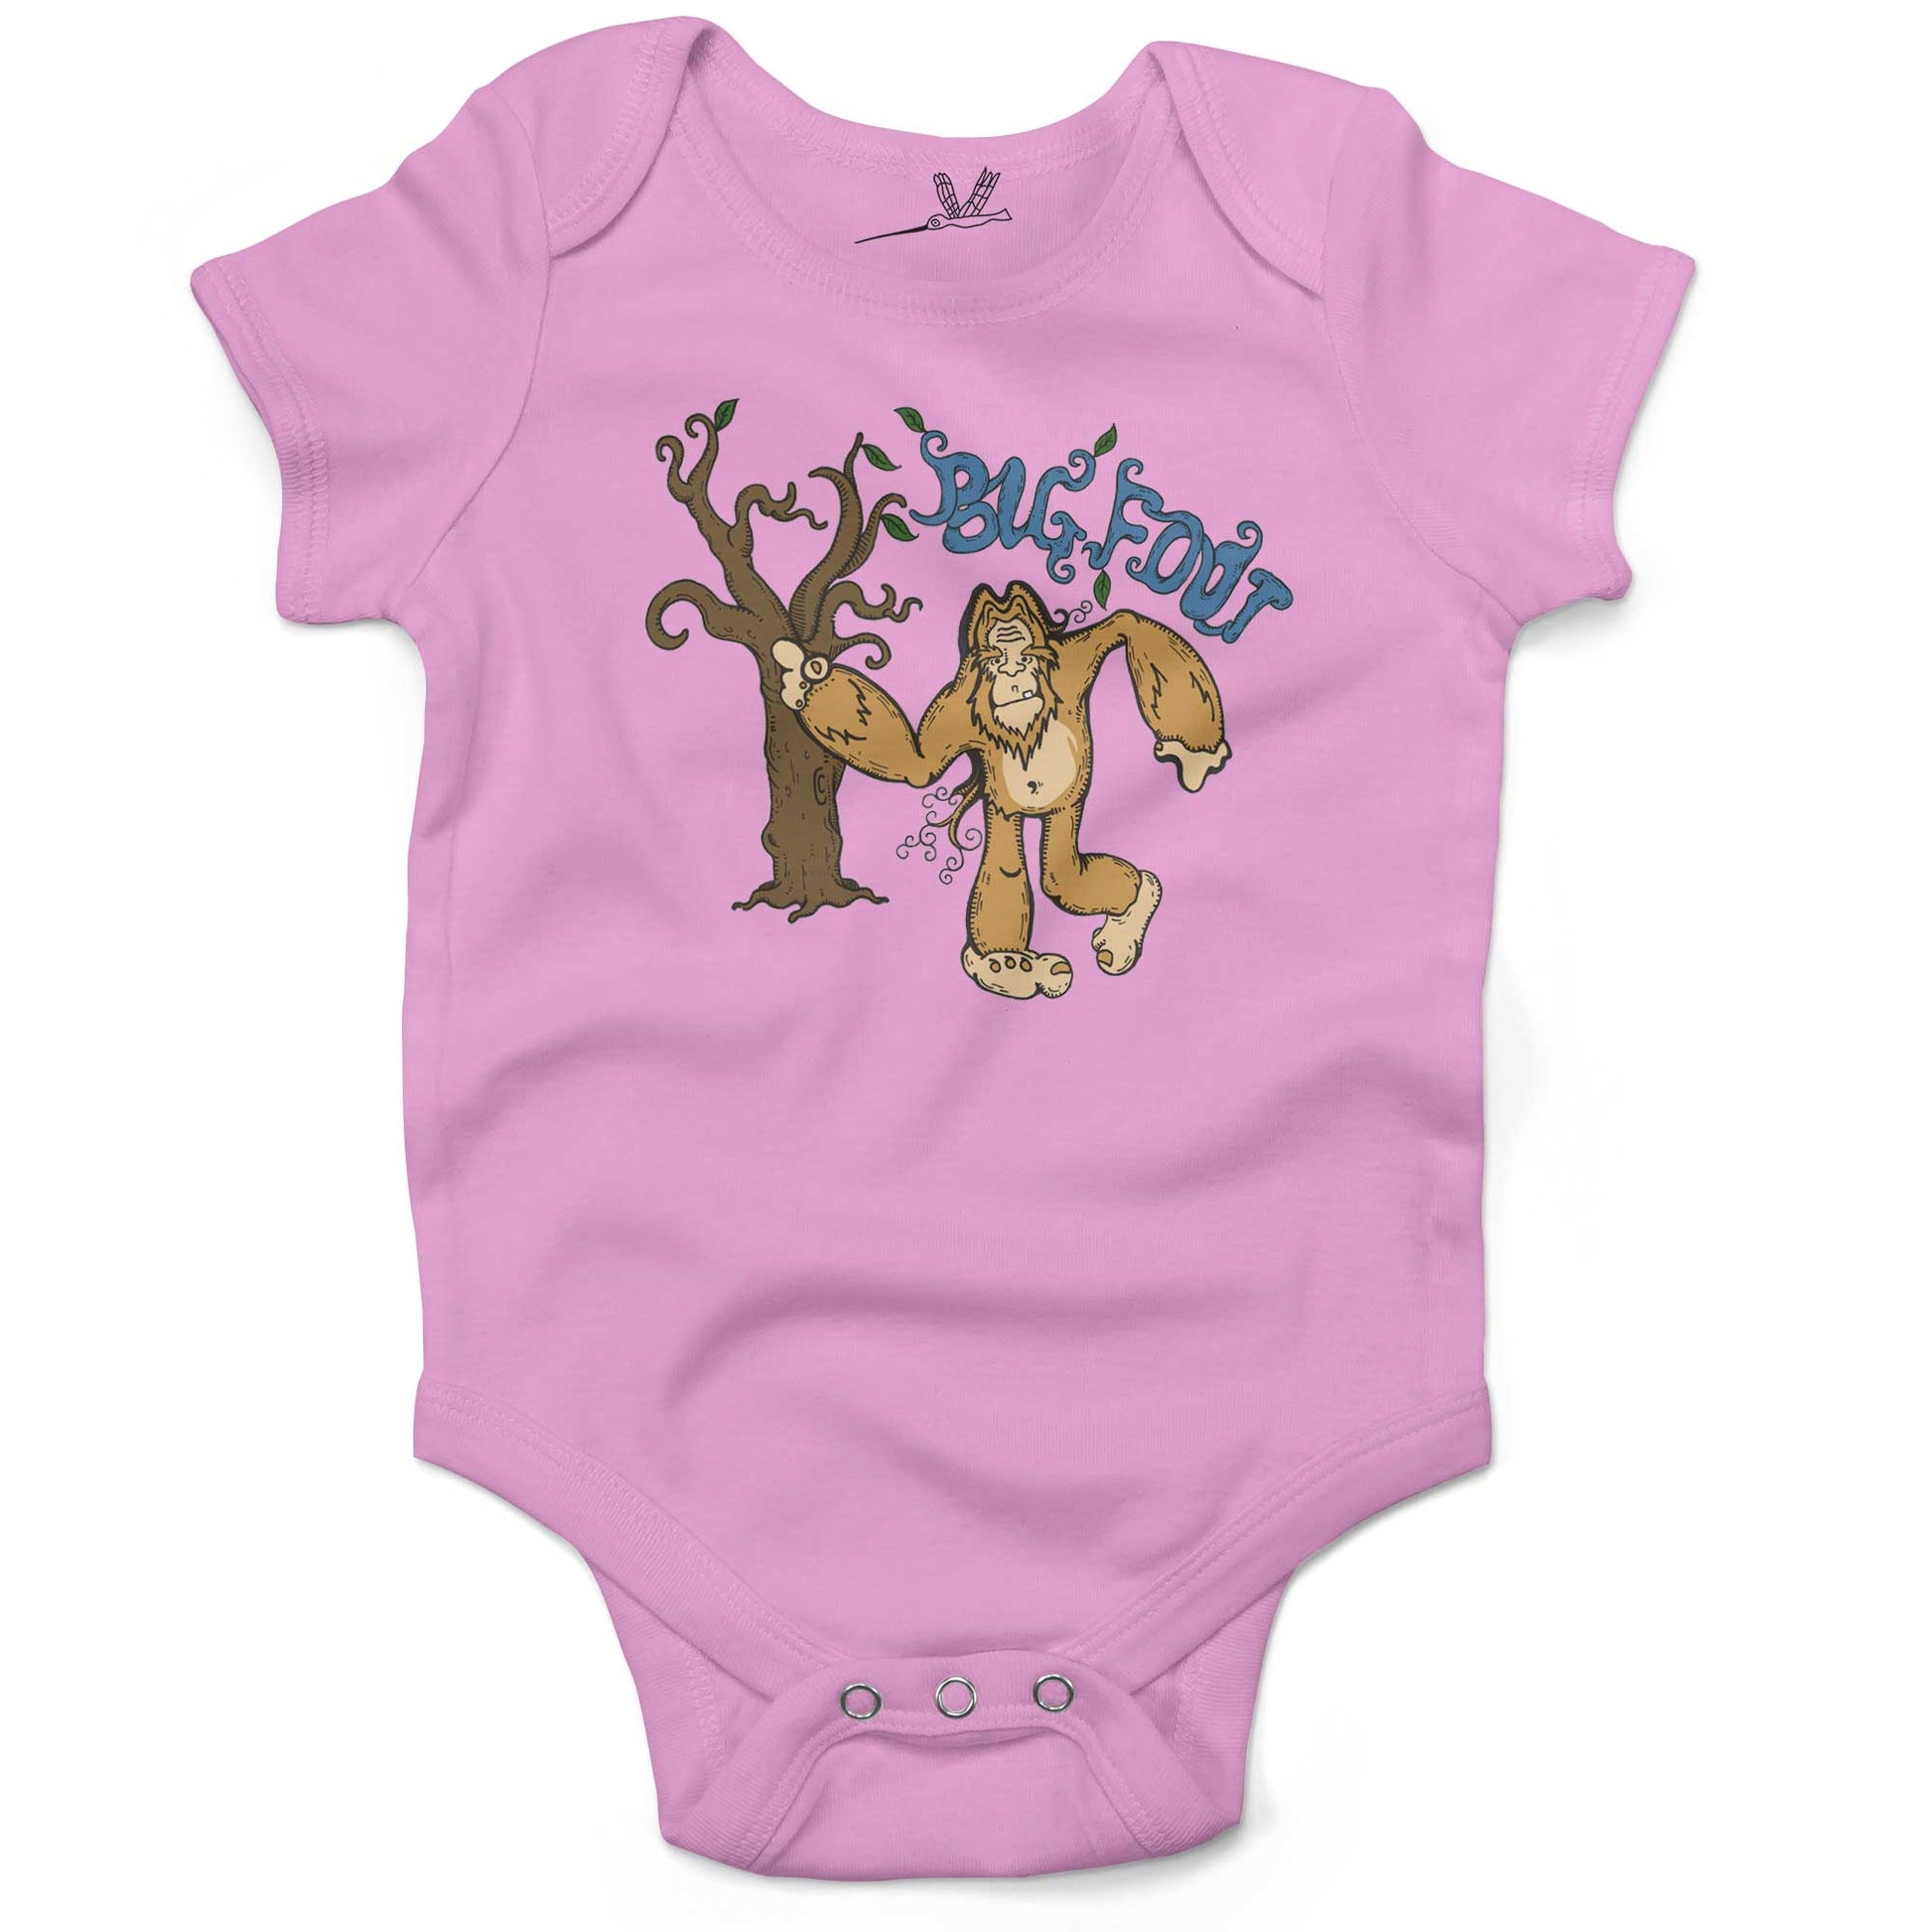 Bigfoot Infant Bodysuit or Raglan Baby Tee-Organic Pink-3-6 months